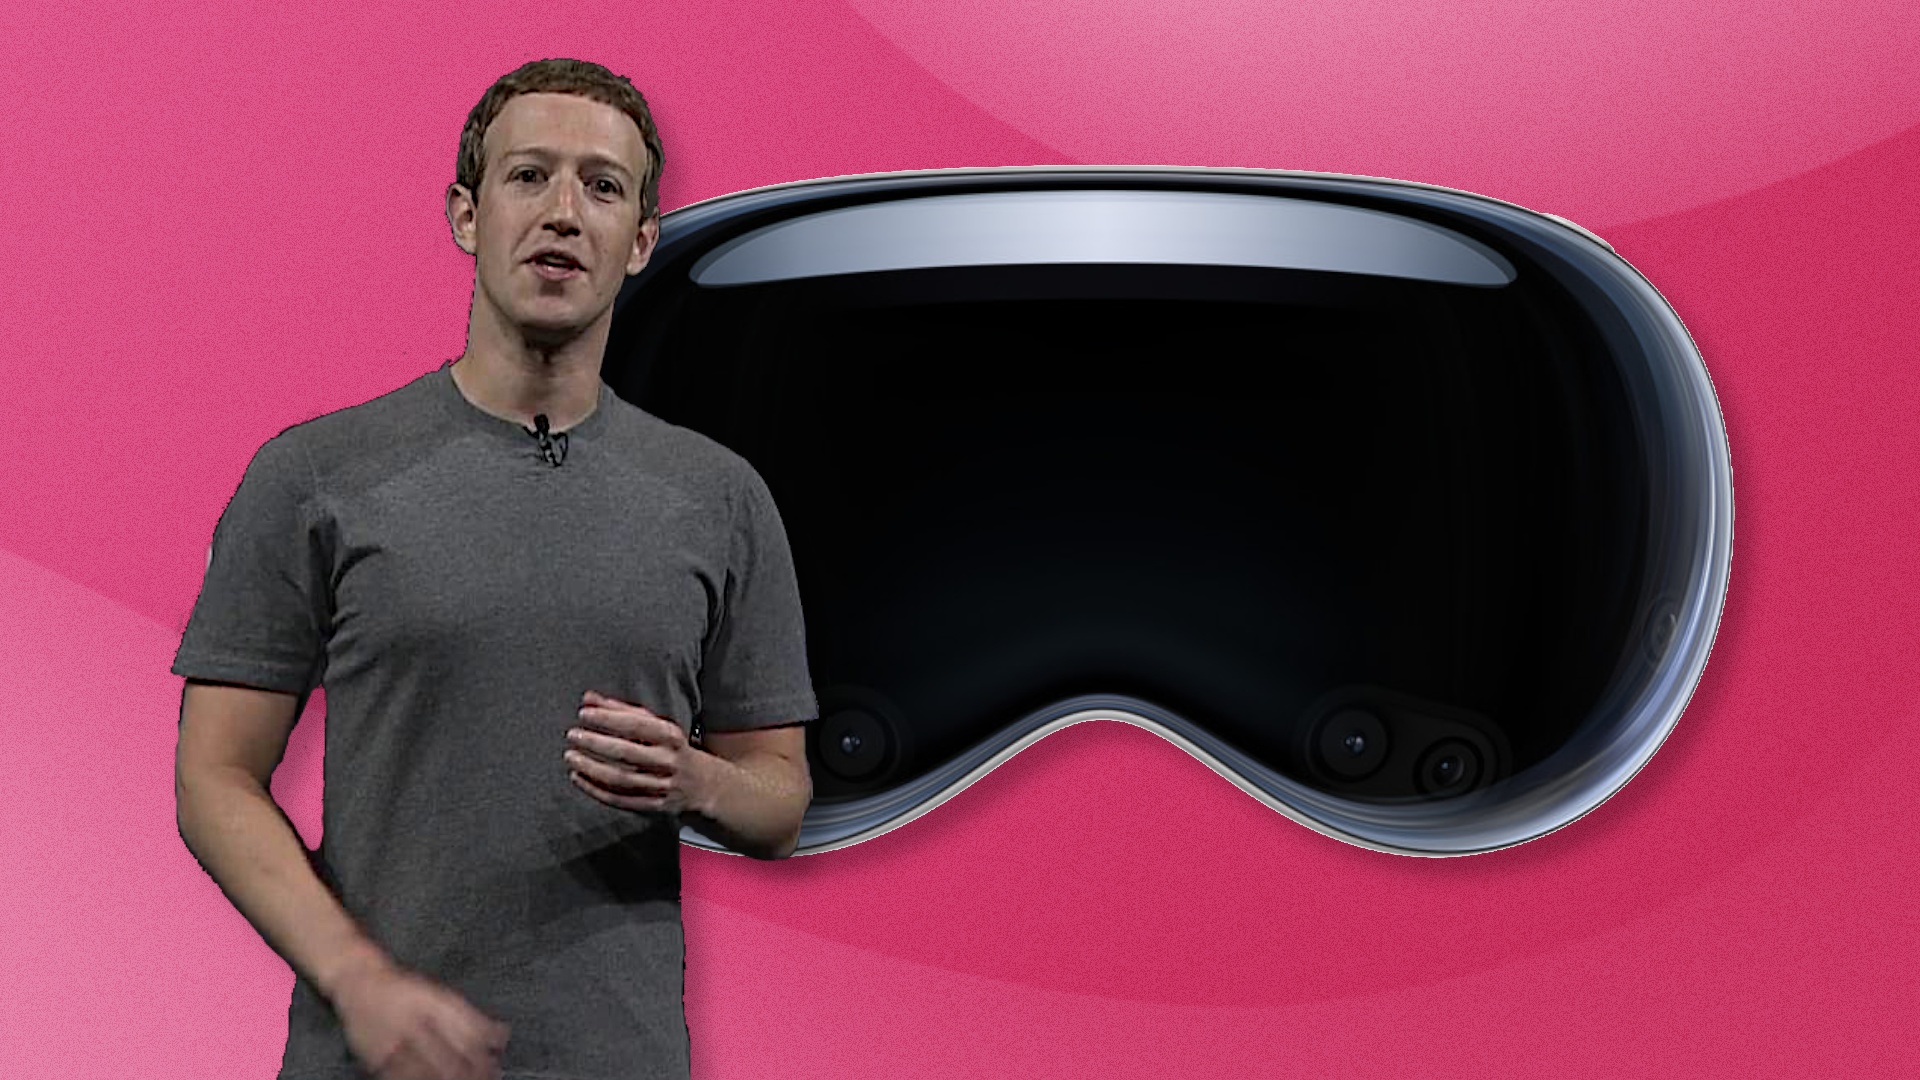 #Vision Pro: Mark Zuckerberg findet Apples Headset nicht revolutionär – und seine eigene VR-Brille viel sozialer